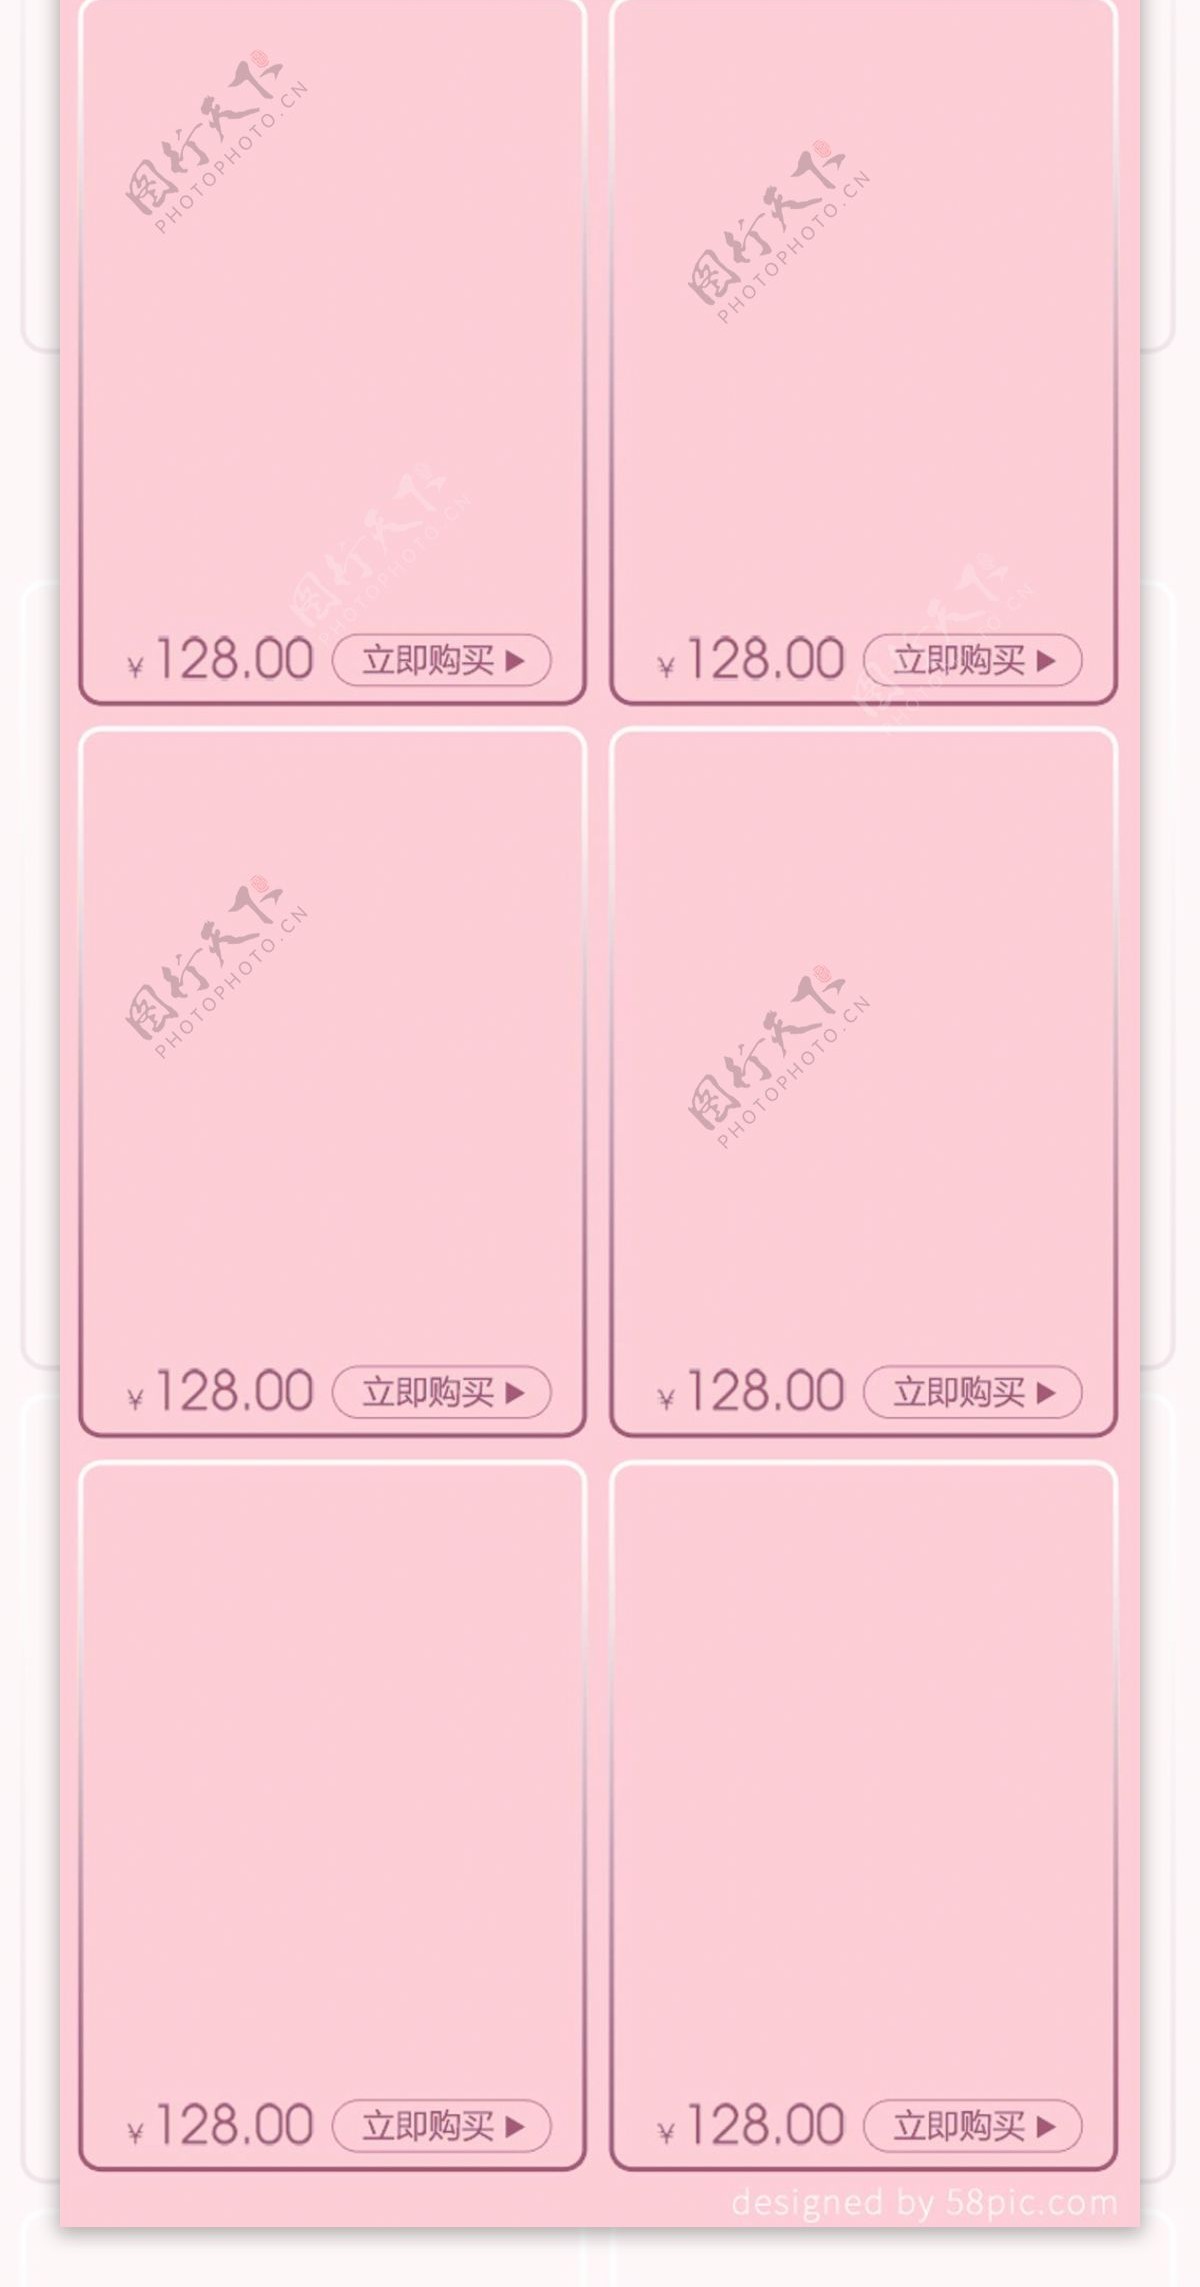 淘宝浪漫情人节粉色手机端首页模板